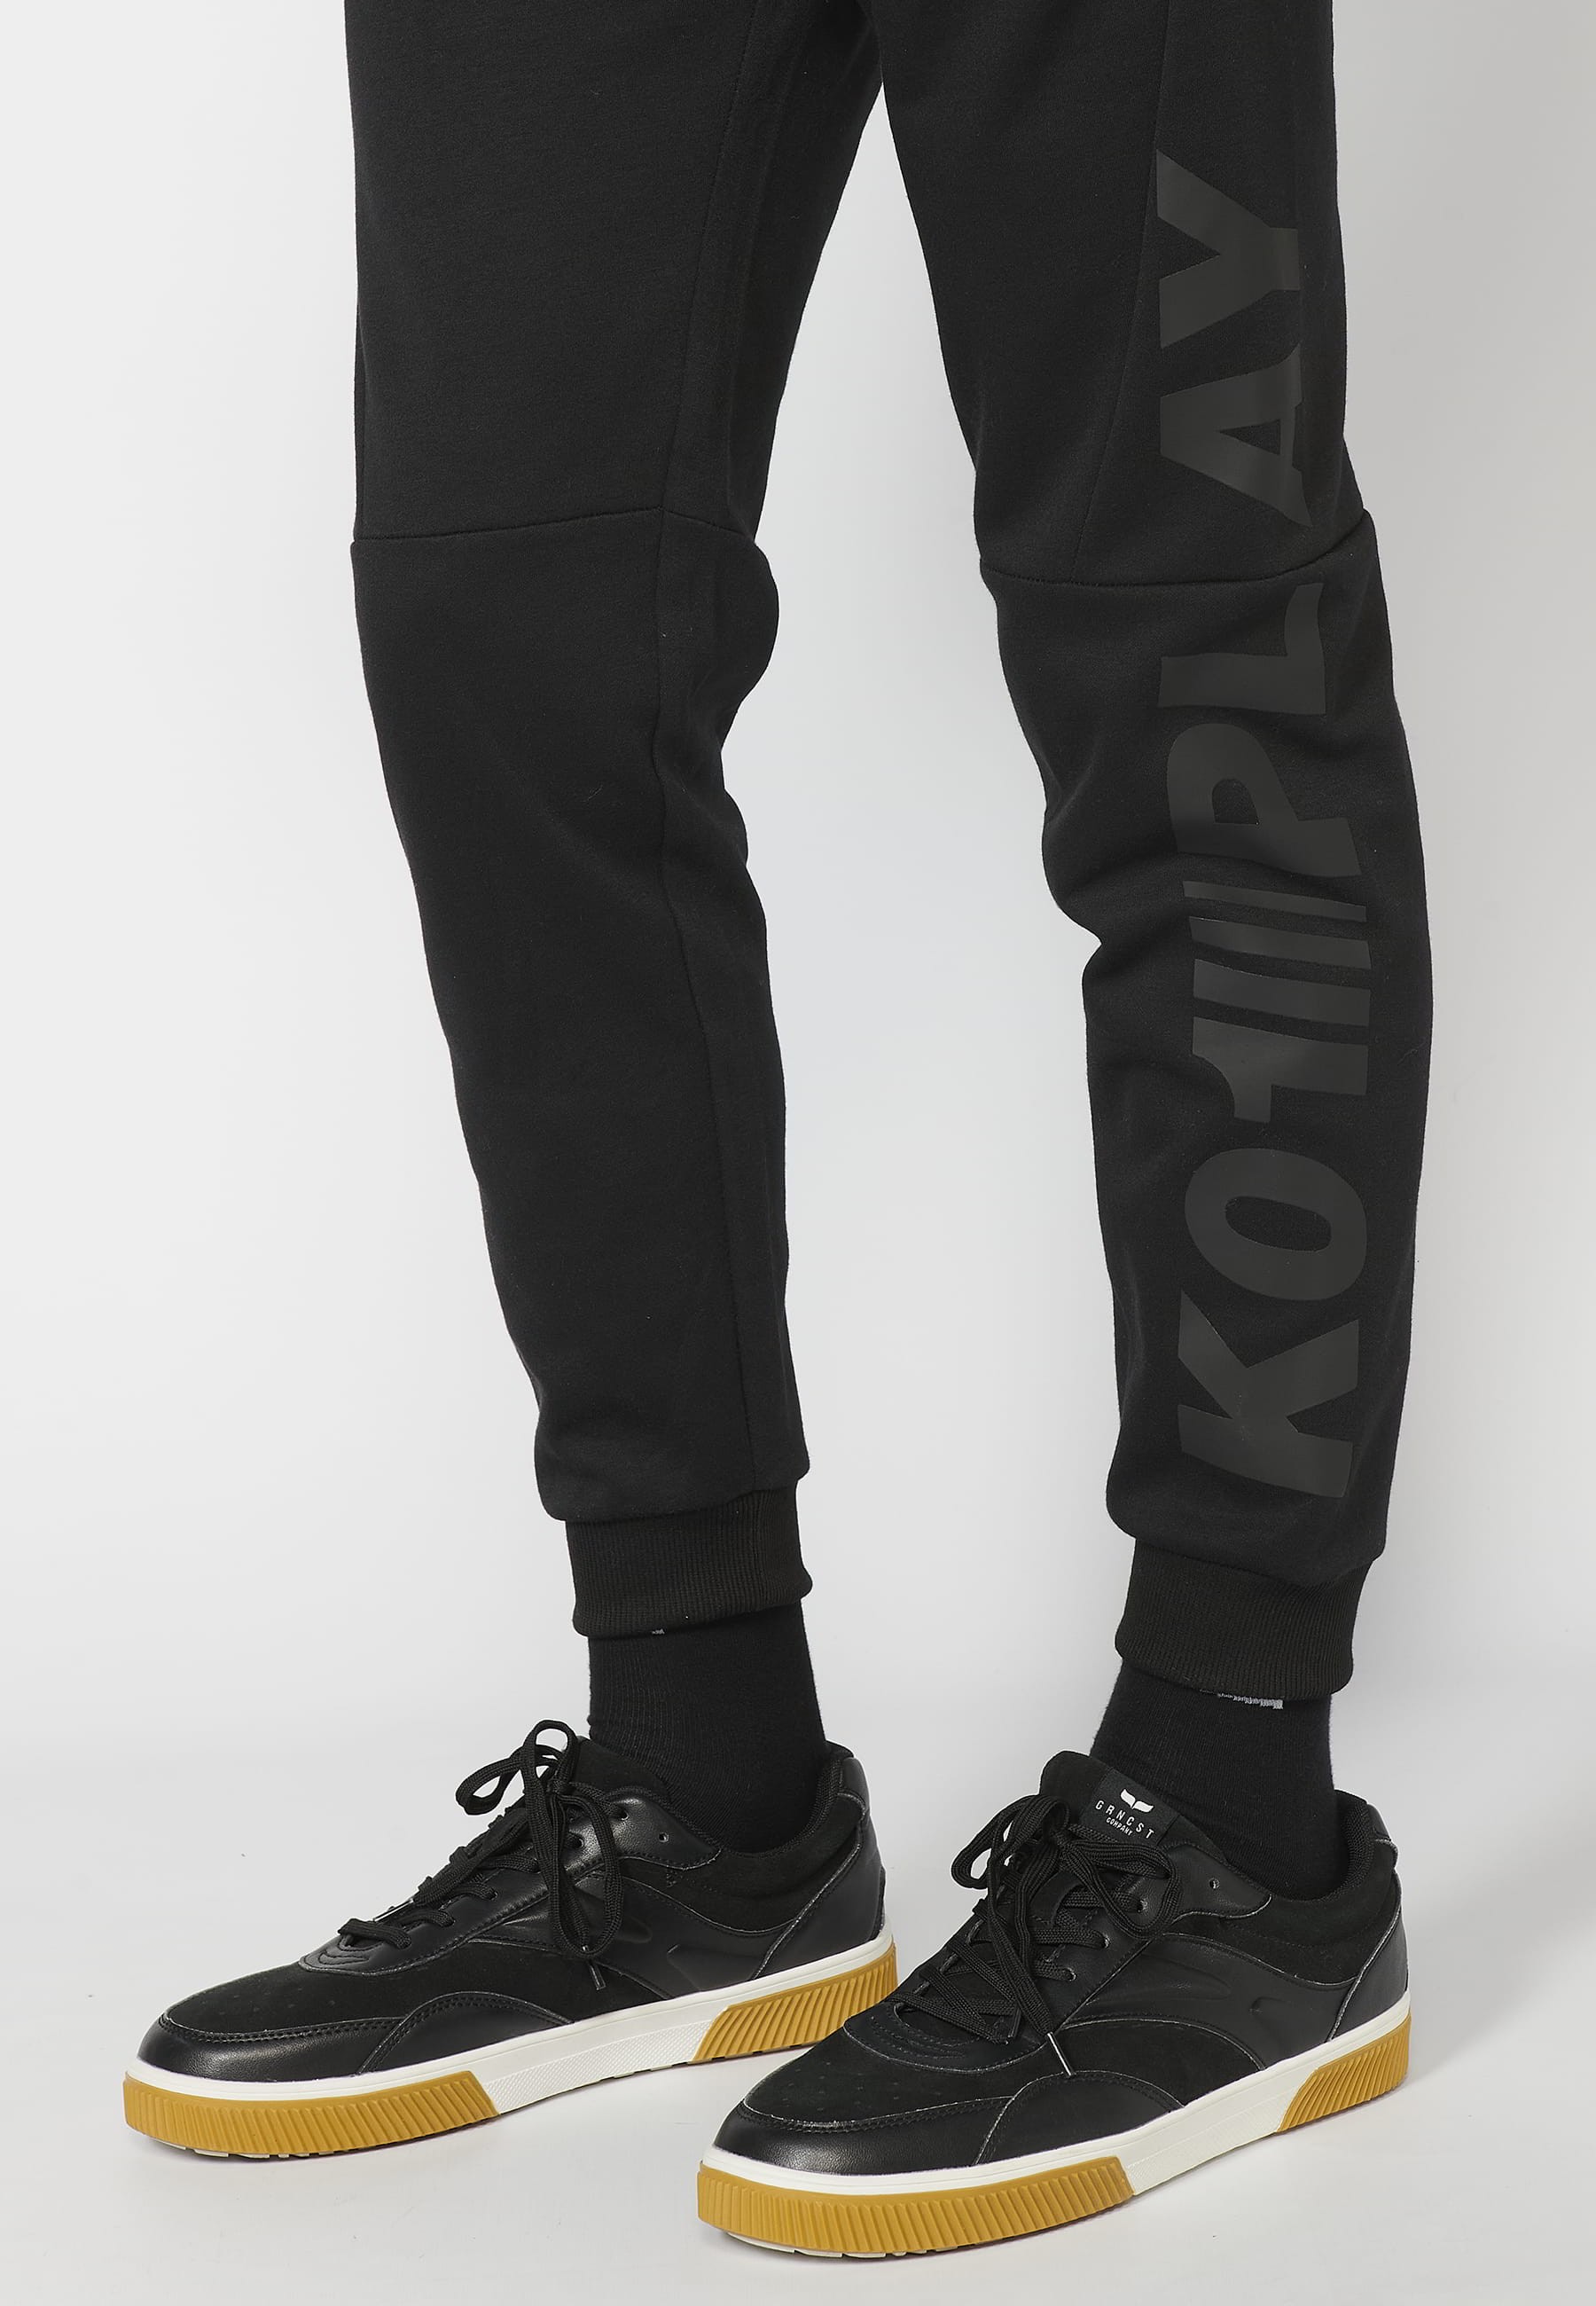 Long jogger pants with adjustable elastic waist, pocket detail, Black color for Men